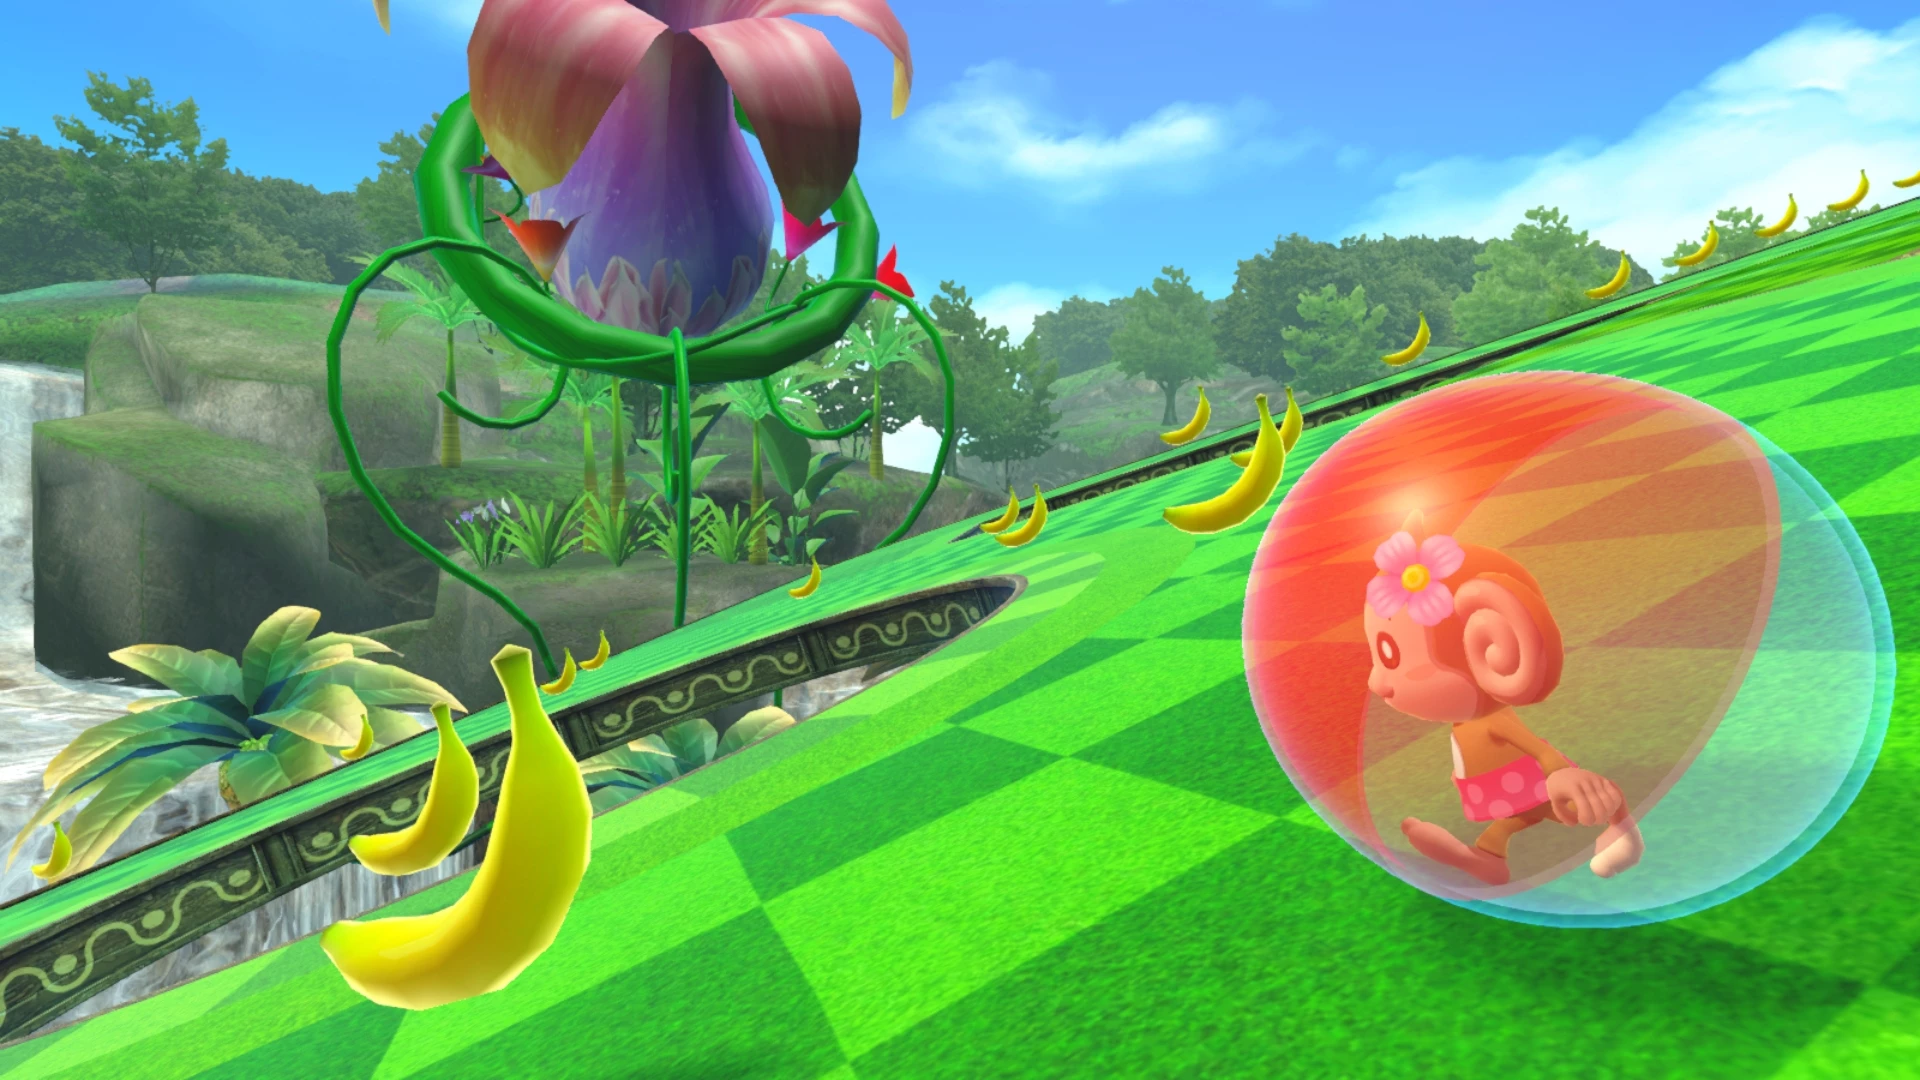 Super Monkey Ball Banana Mania - Launch Edition voor de Nintendo Switch kopen op nedgame.nl